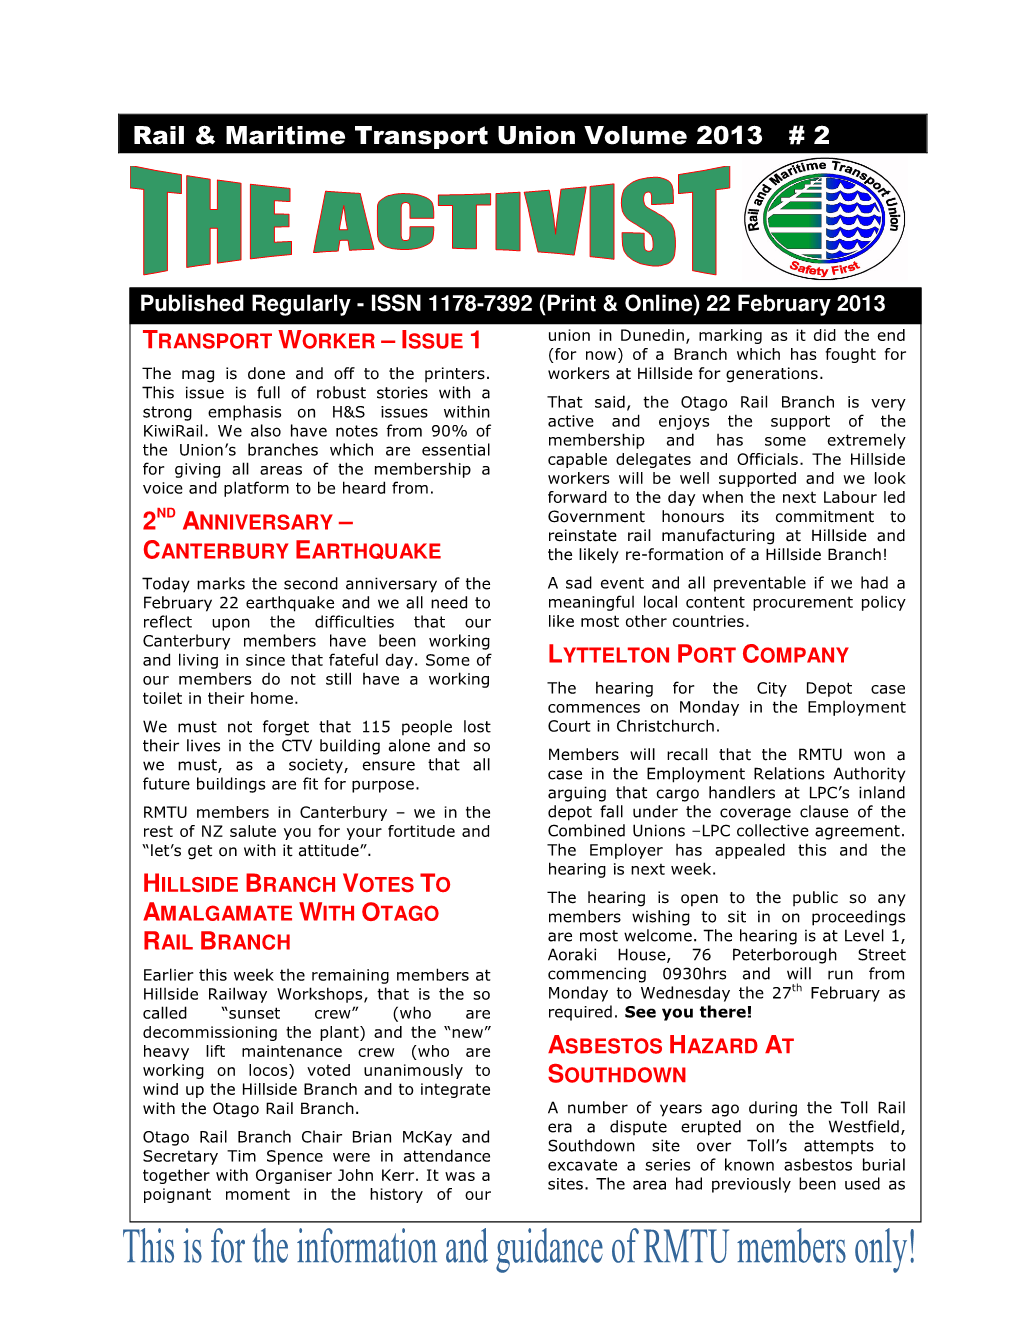 Activist #2, 2013